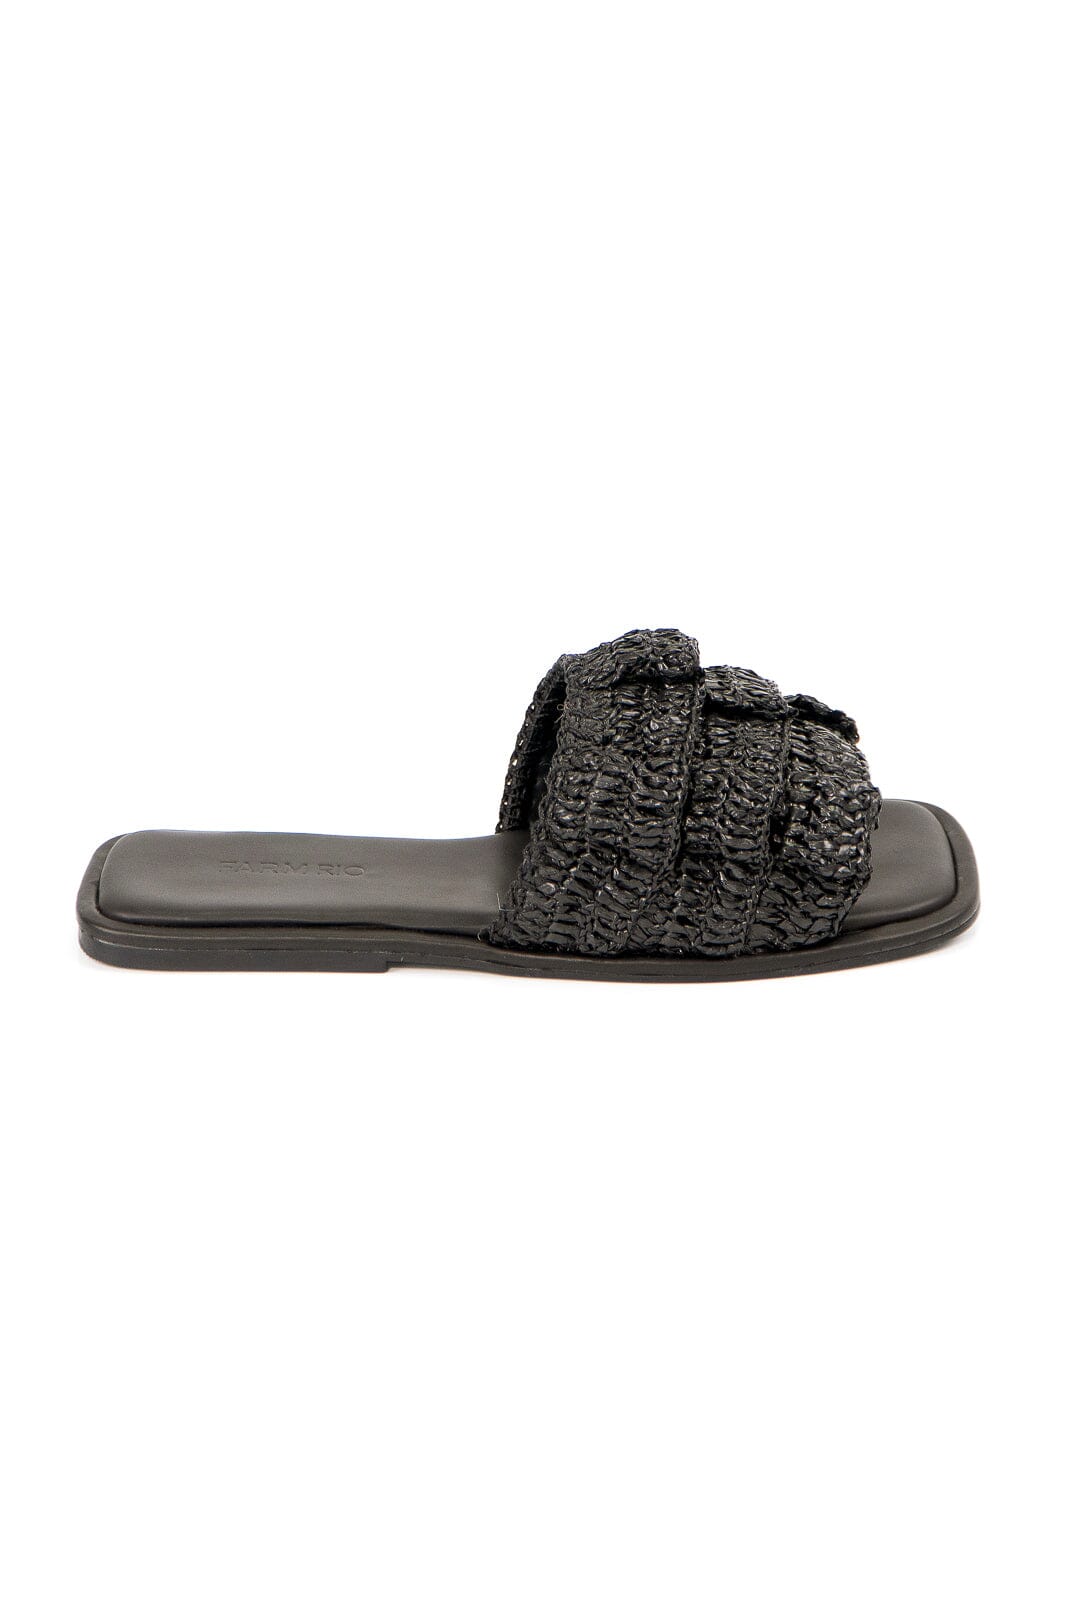 Black Crochet Ruffle Slide Sandal